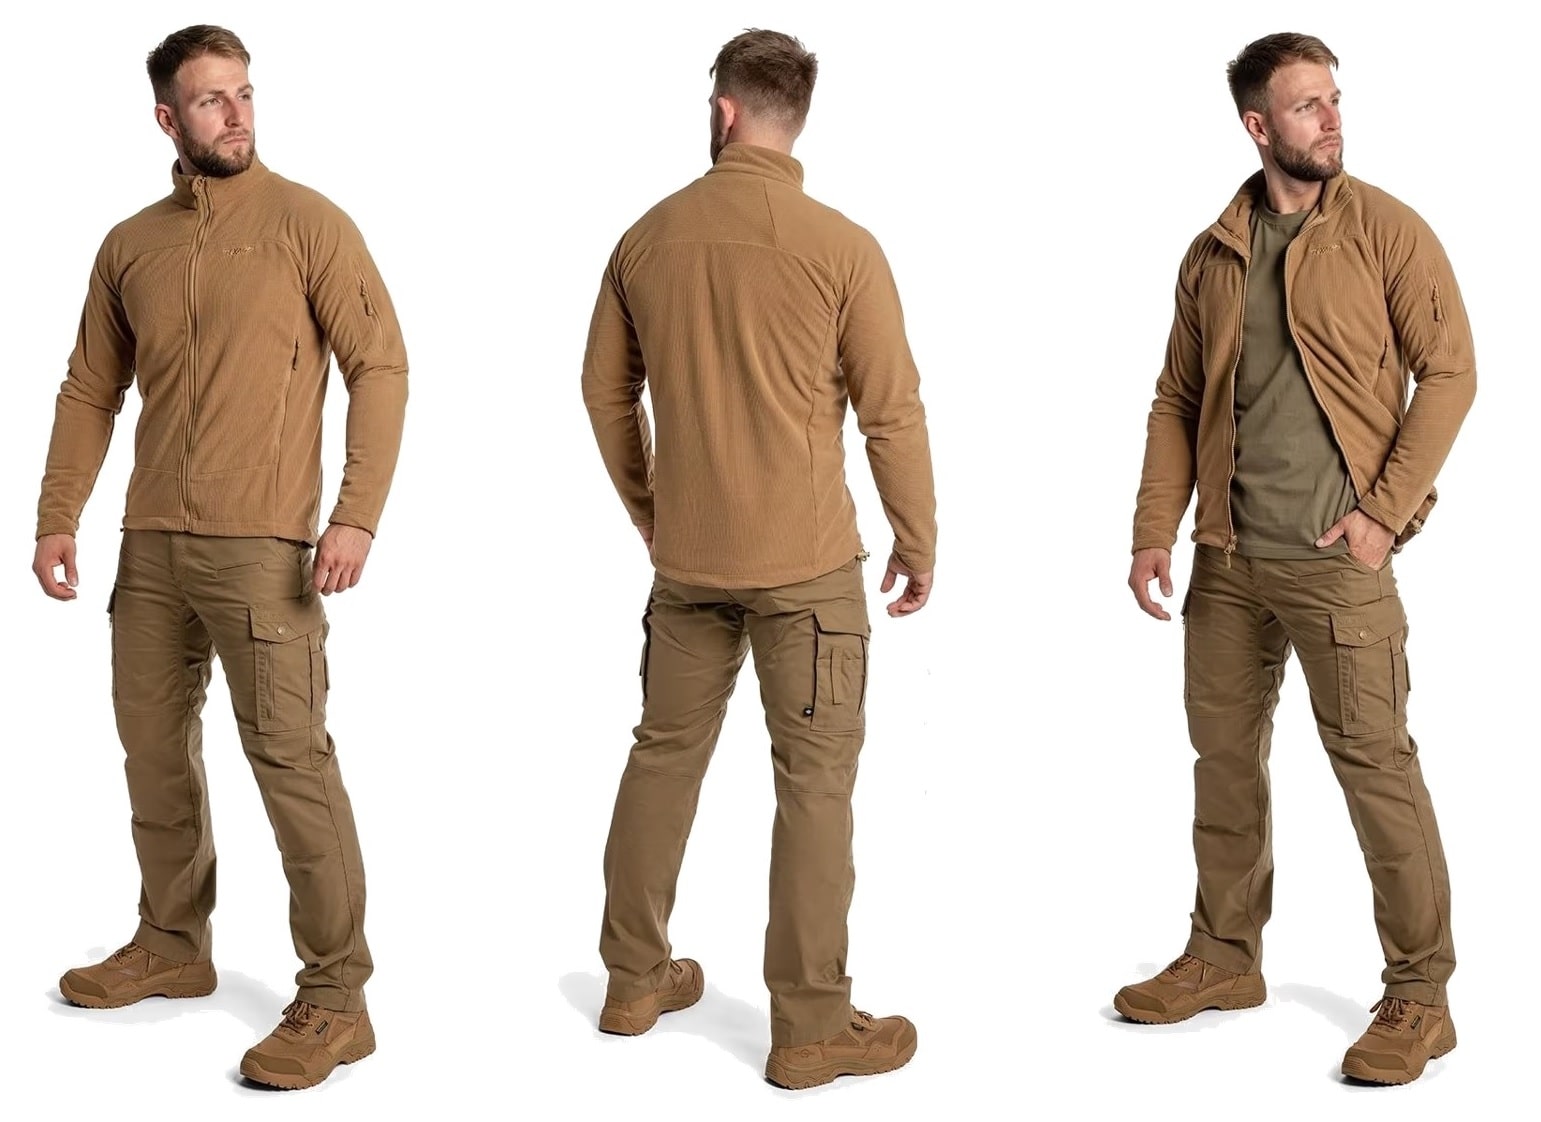 Odkrijte vrhunsko flis jakno Texar Conger Coyote - idealno taktično oblačilo za zaščito in udobje v vseh vremenskih razmerah. Vzdržljiva, funkcionalna in kakovostna jakna za pripadnike varnostnih služb, pohodnike in rekreativce. Zagotovite si svoj primerek 